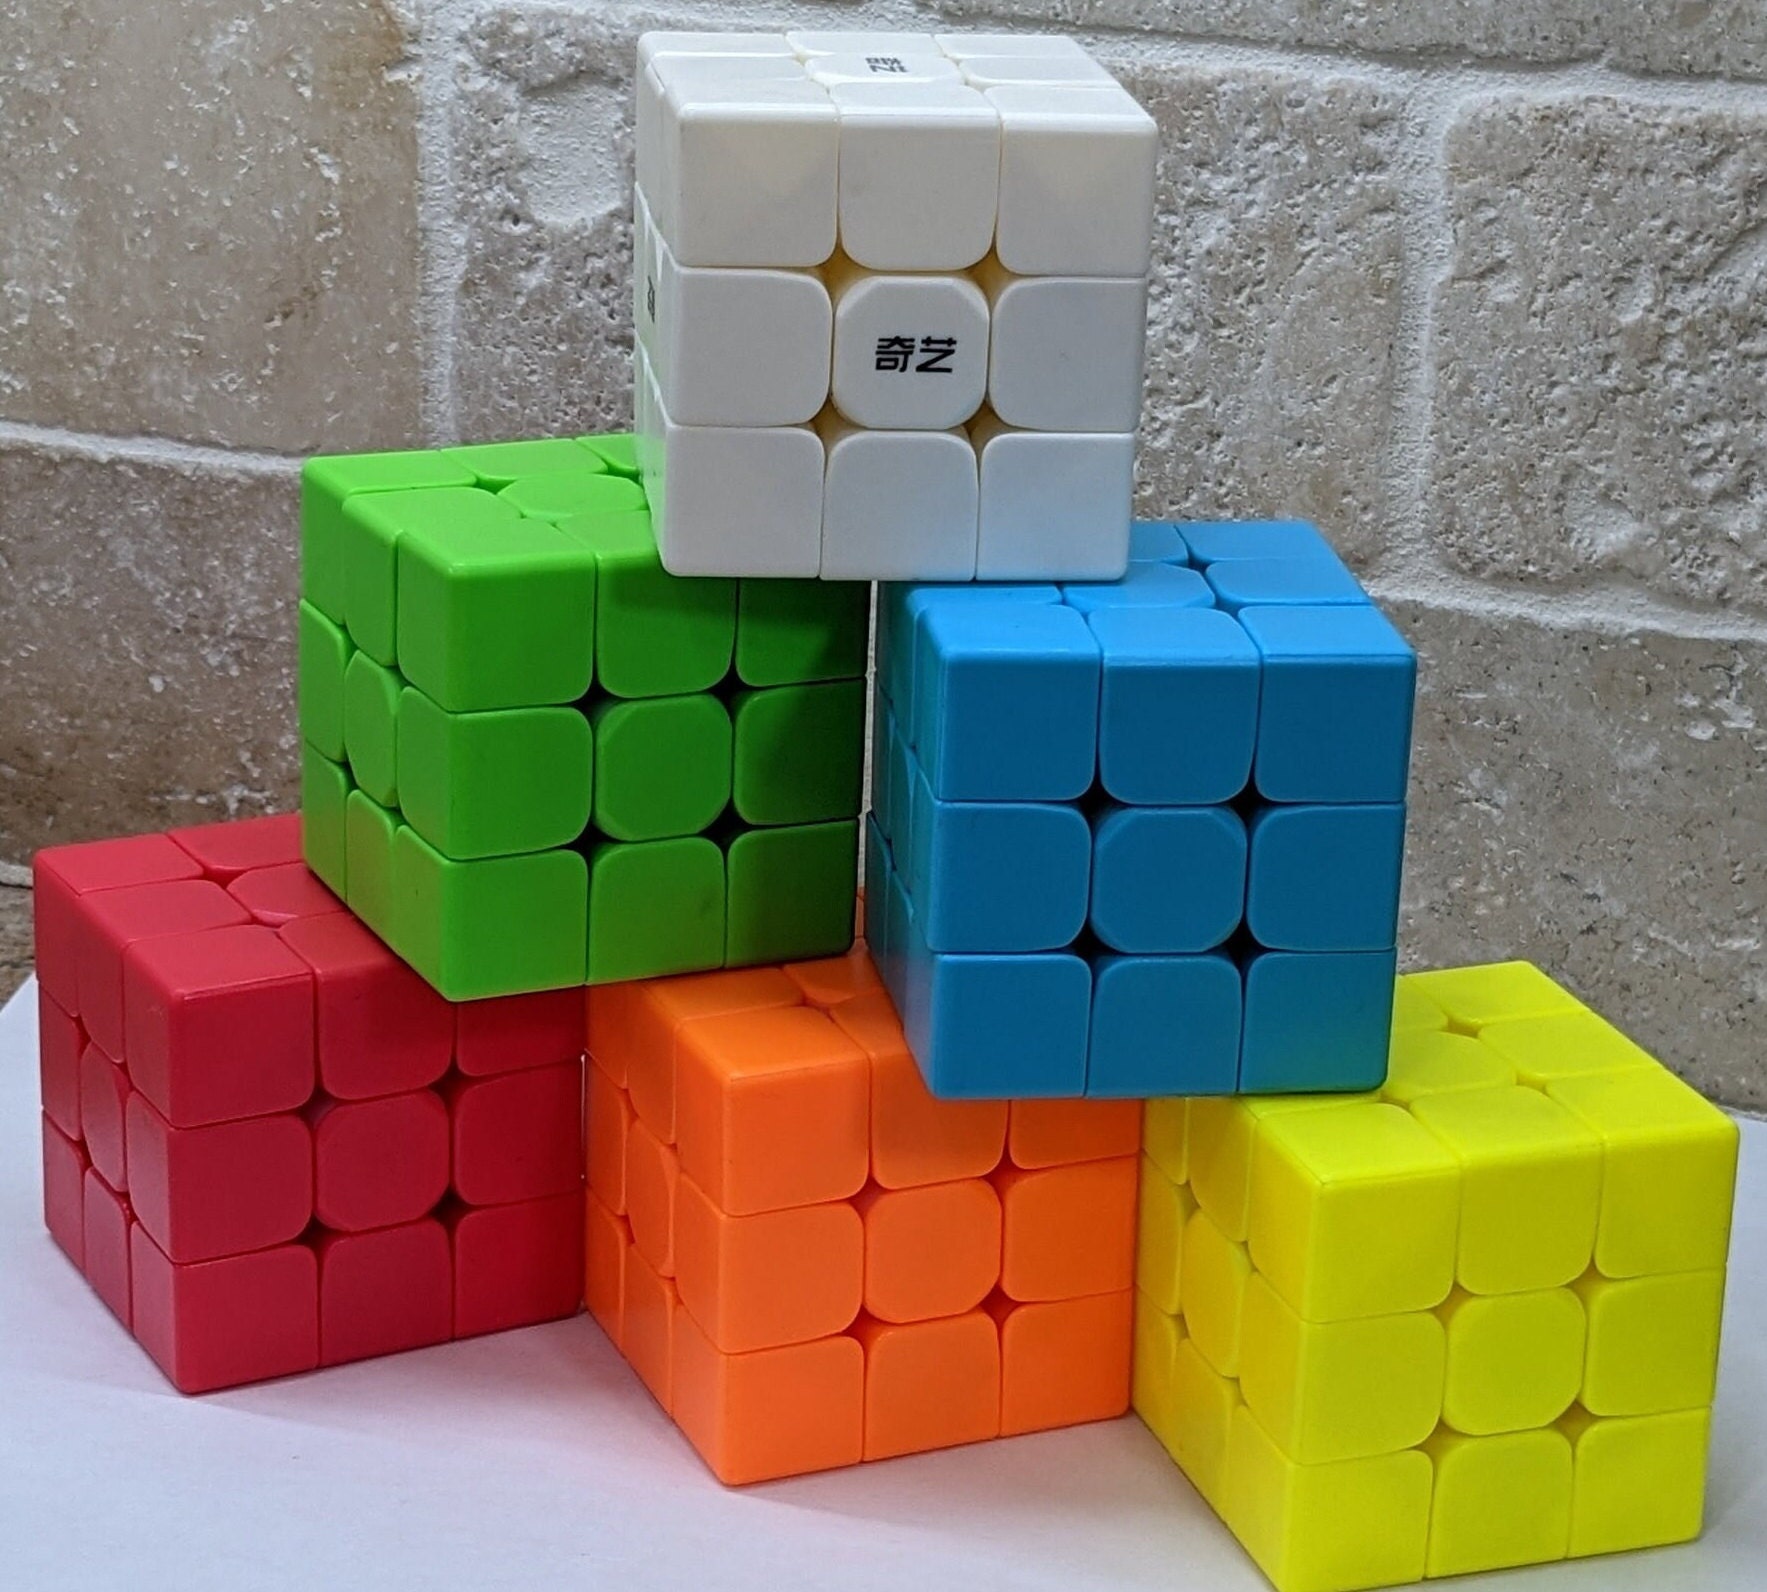 3x3 Educational Magic Cube Idea Xmas Gift